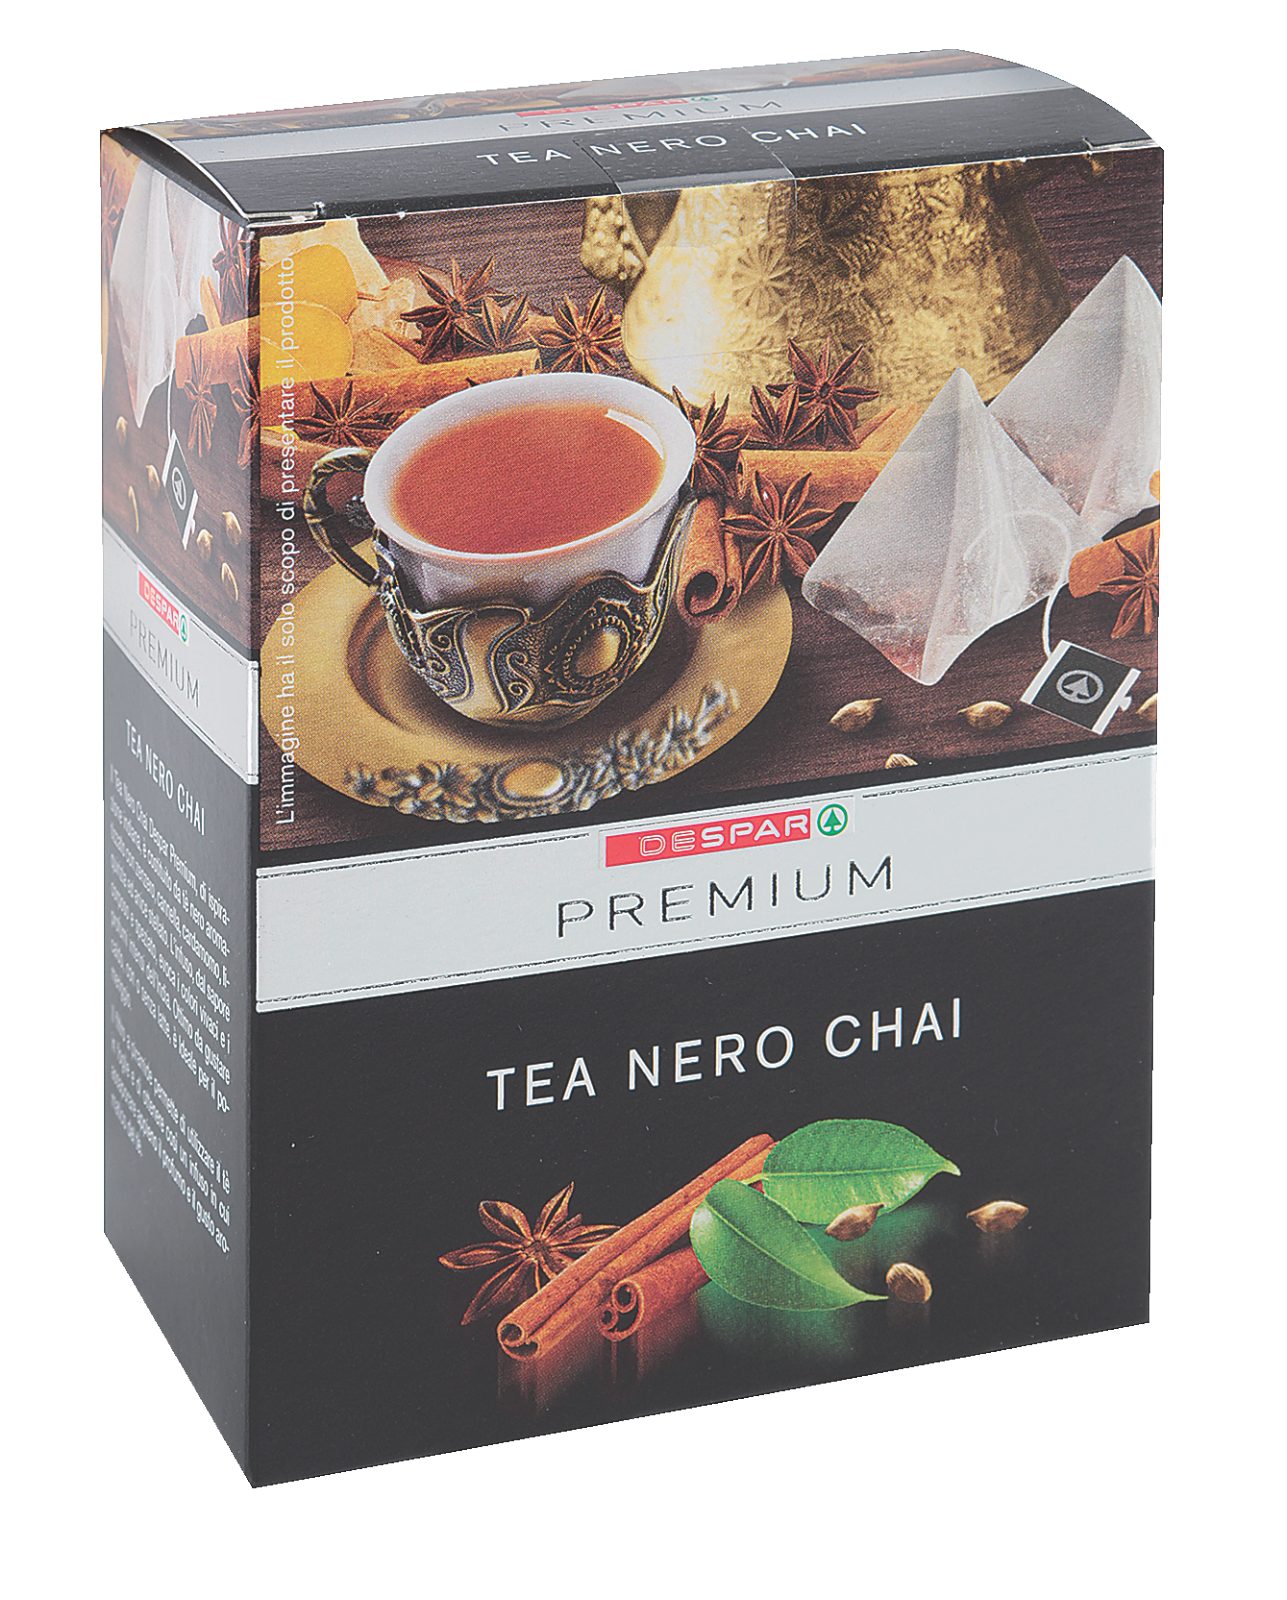 Tea Nero Chai